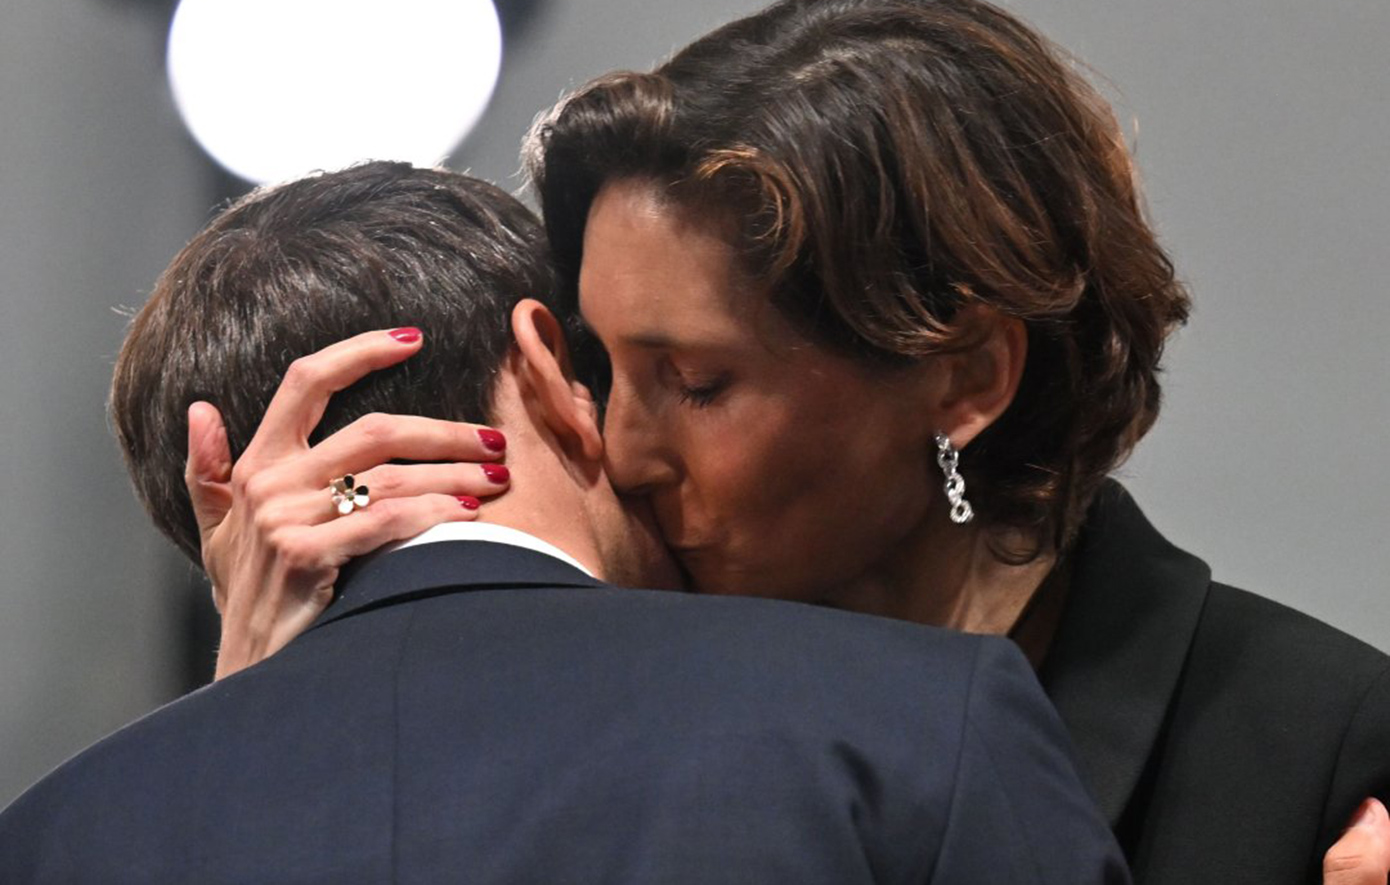 Το φιλί της υπουργού αθλητισμού στον λαιμό του Μακρόν στην τελετή έναρξης των Ολυμπιακών Αγώνων